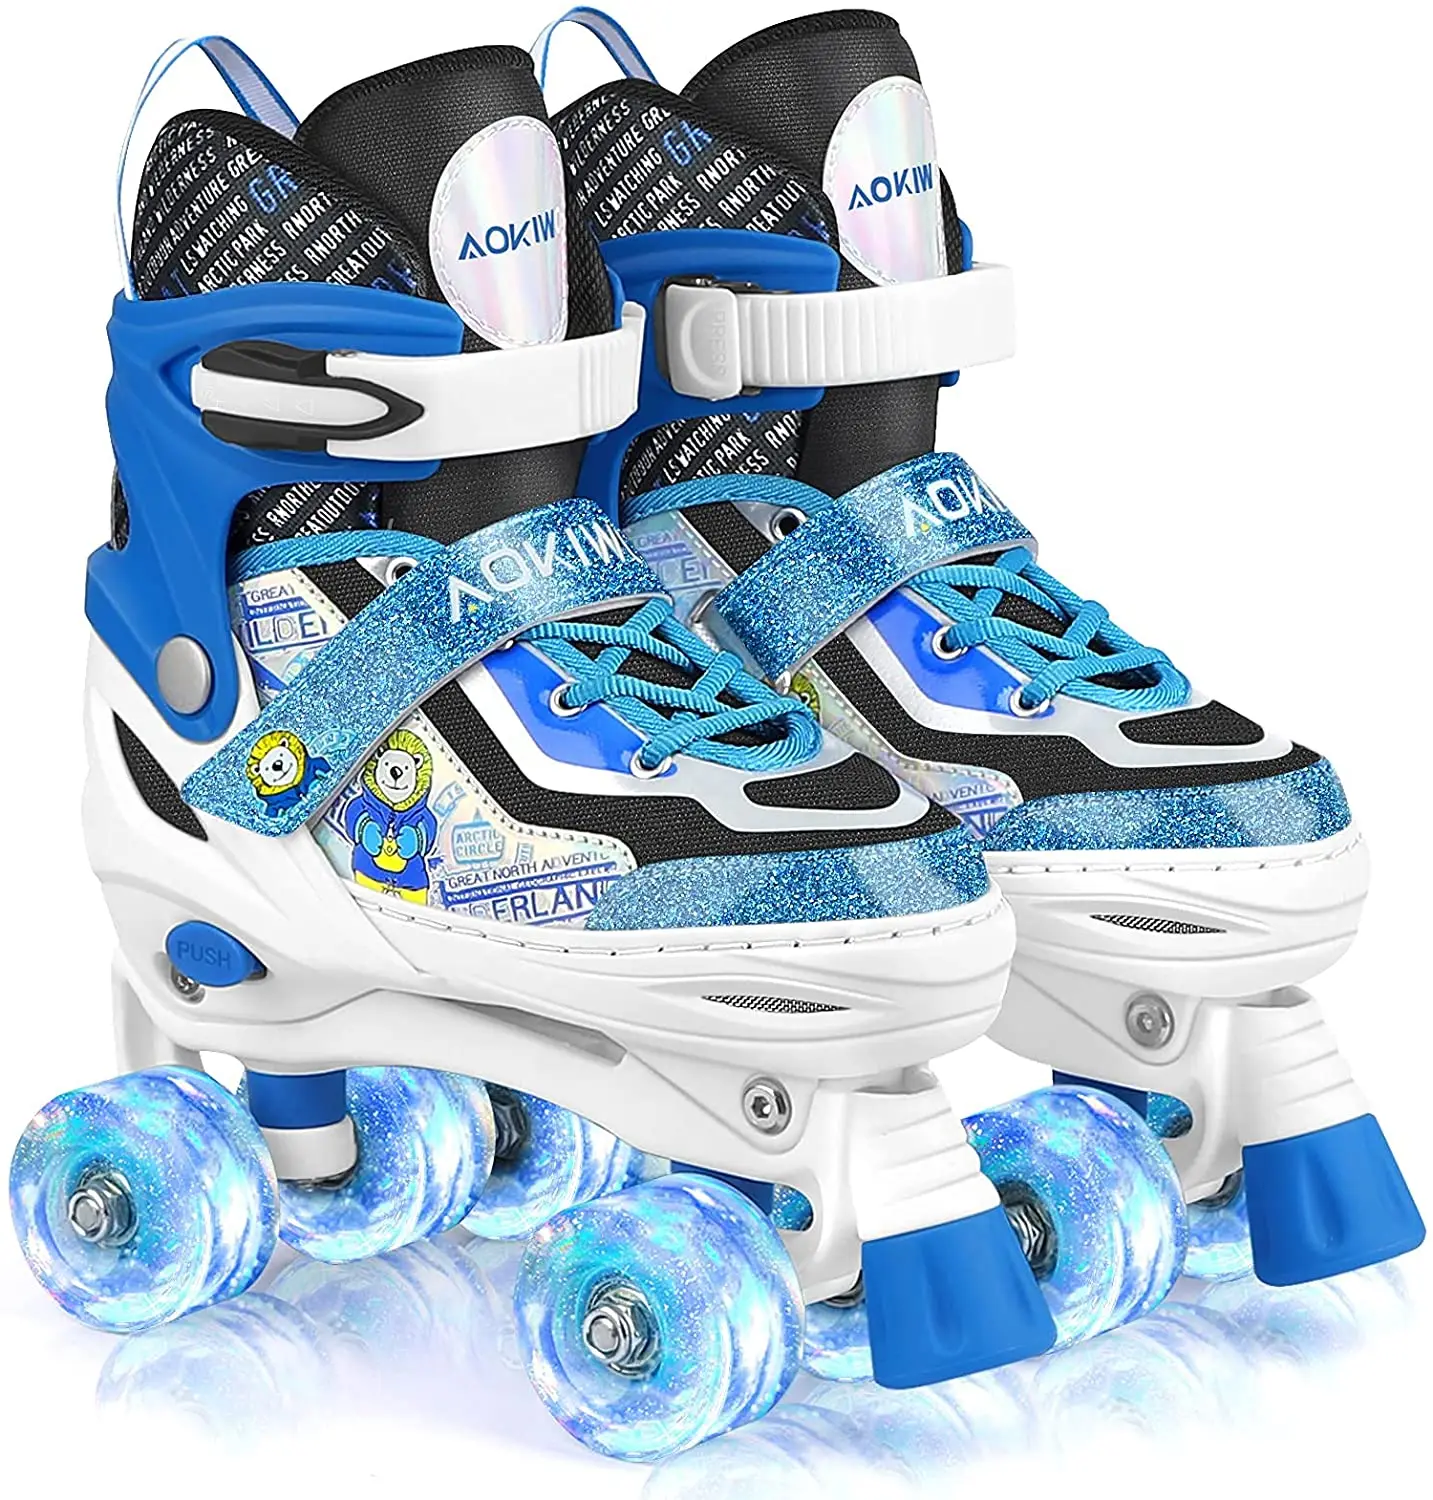 4 Sizes Adjustable Kids Roller Skates Outdoor Indoor with Light up Wheels Taiker Roller Skates for Girls Boys Kids Toddler Size 11C to 7Y 